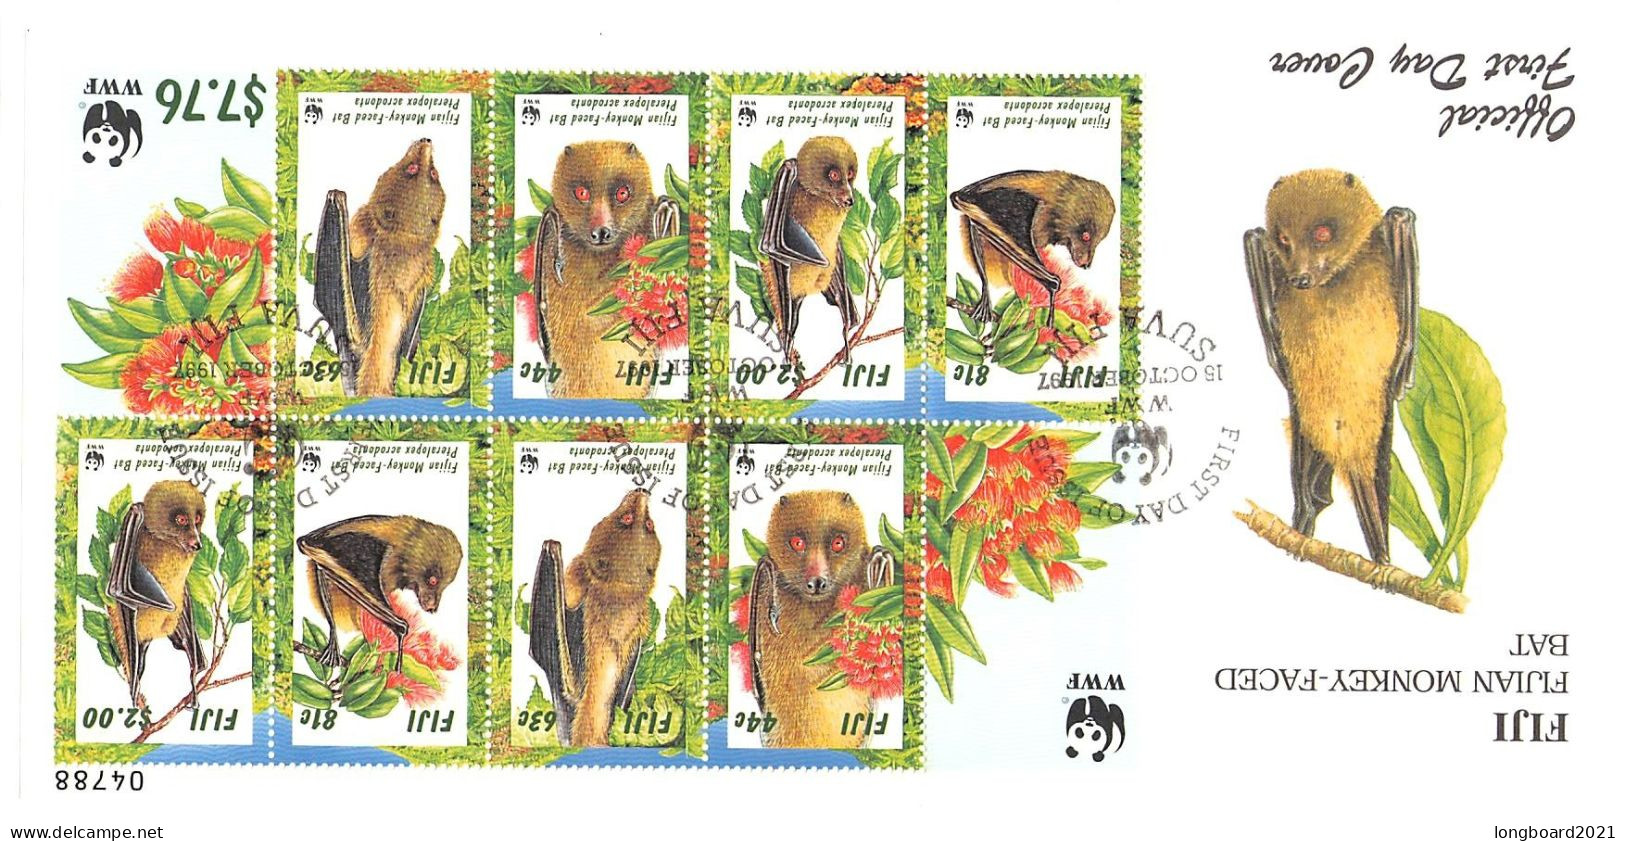 FIJI - FDC WWF 1997 - BATS -MINISHEET- / 4185 - Fiji (1970-...)